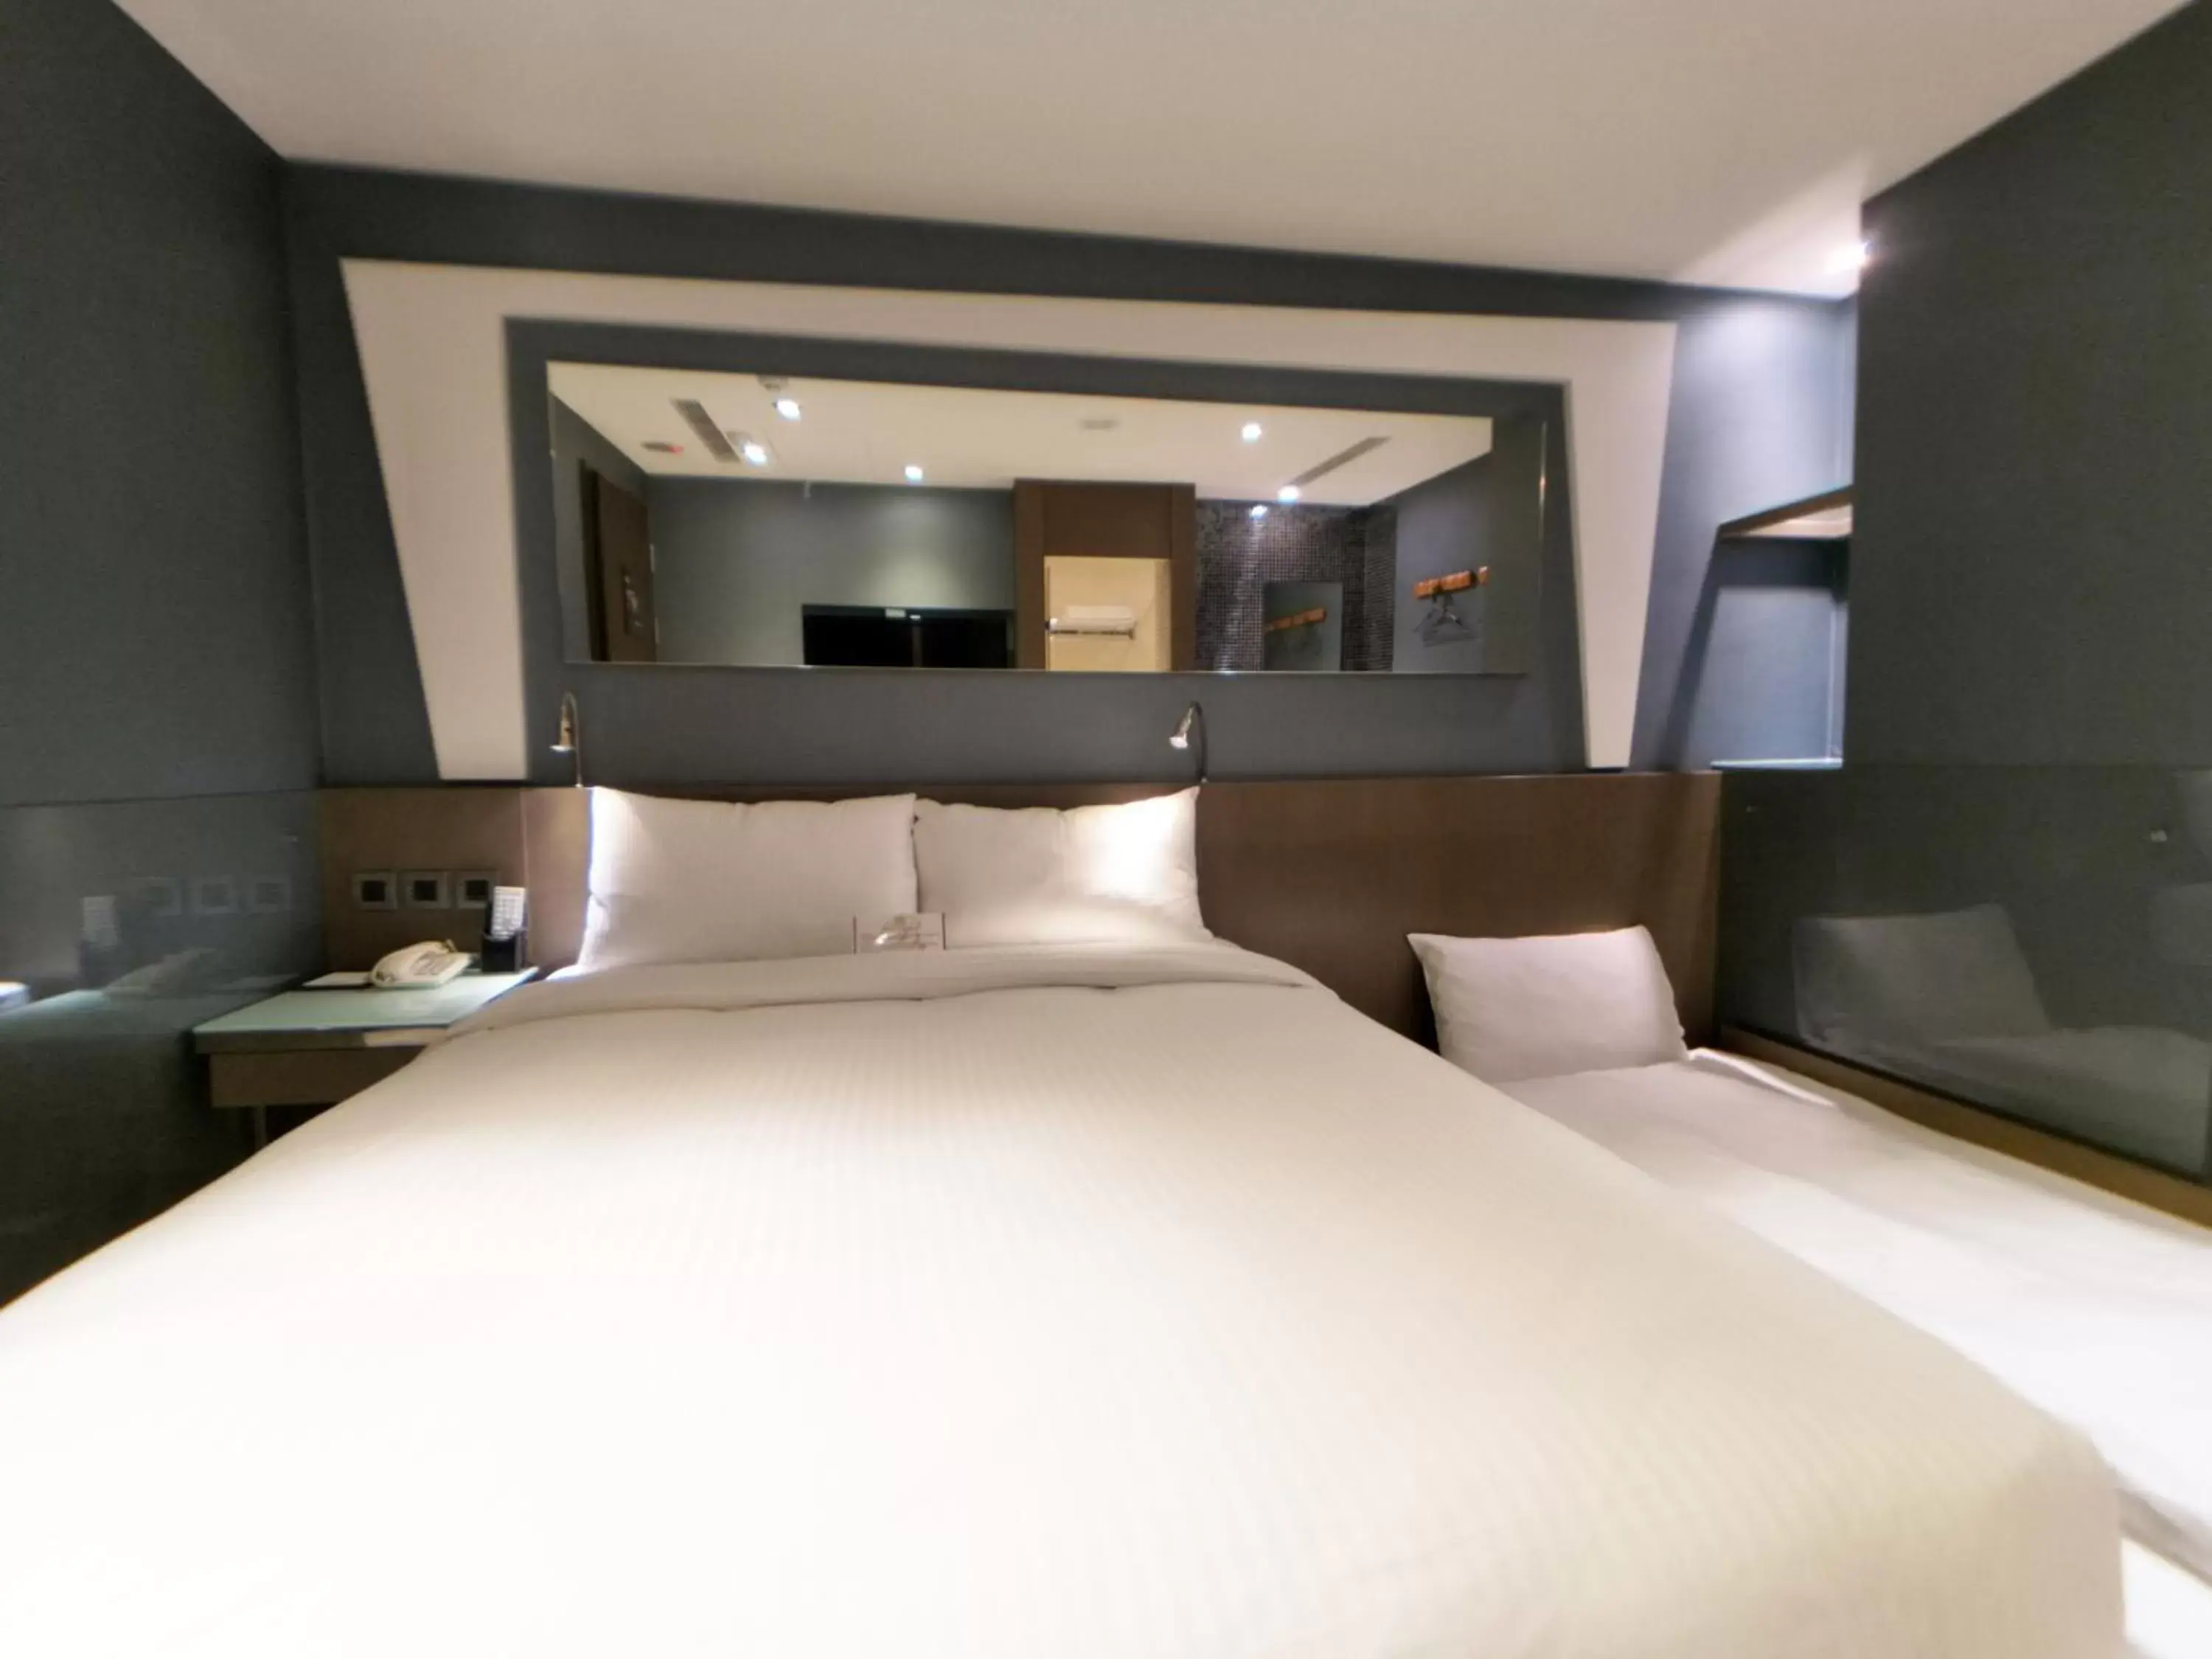 Bedroom in Beauty Hotels Taipei - Hotel B6